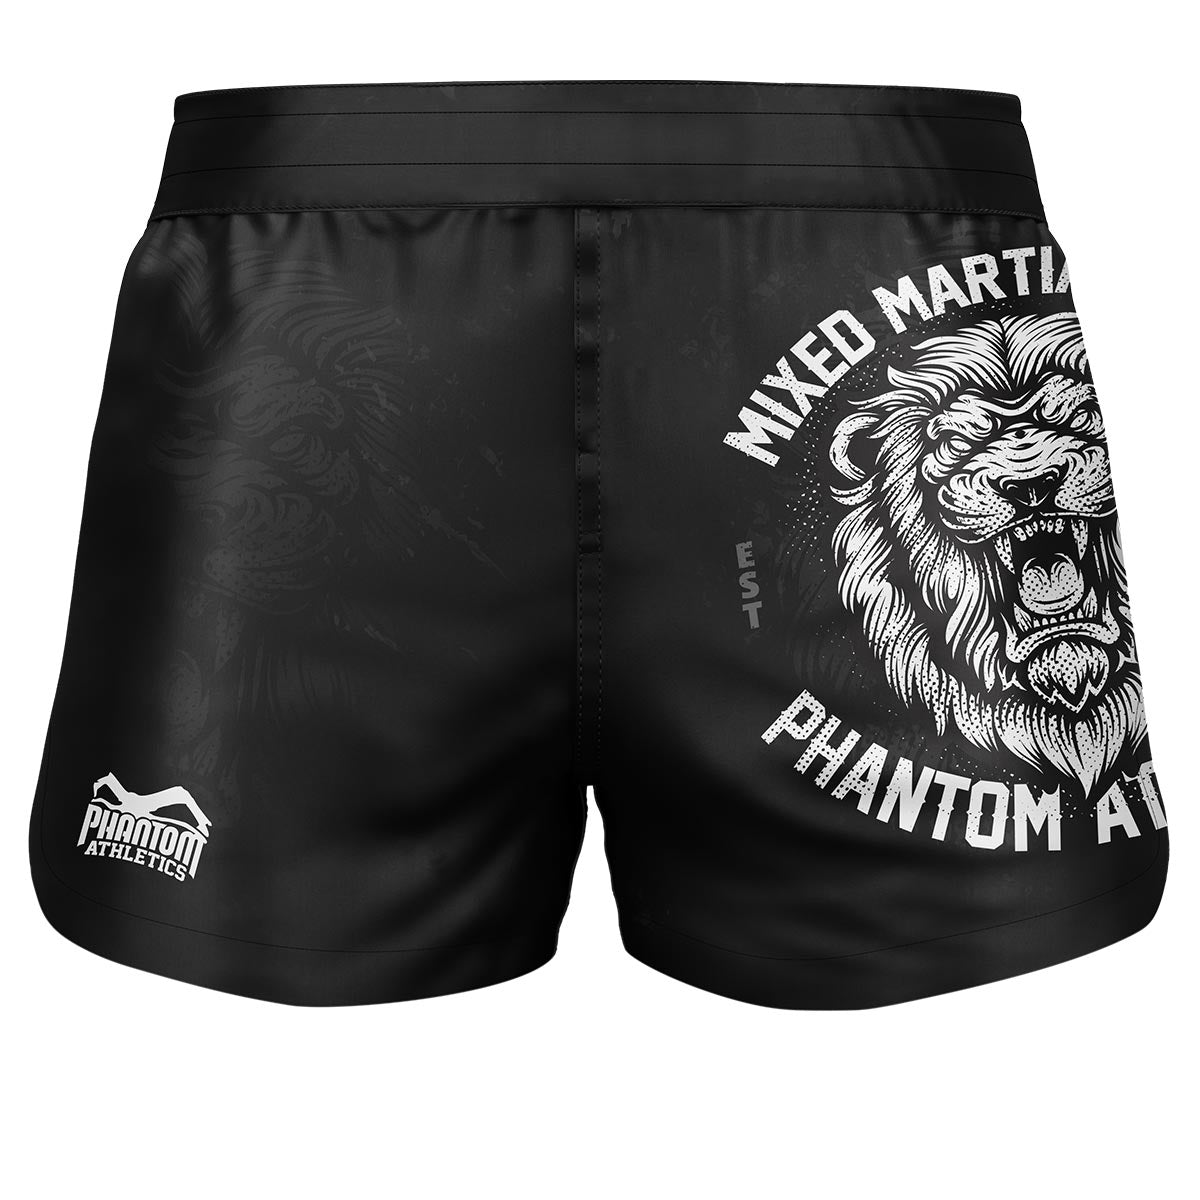 Spodenki Phantom Fusion 2w1. Najlepsze spodenki do Twoich sztuk walki. Idealny do MMA, Muay Thai, BJJ, zapasów i nie tylko. W kolorze czarnym z motywem lwa.